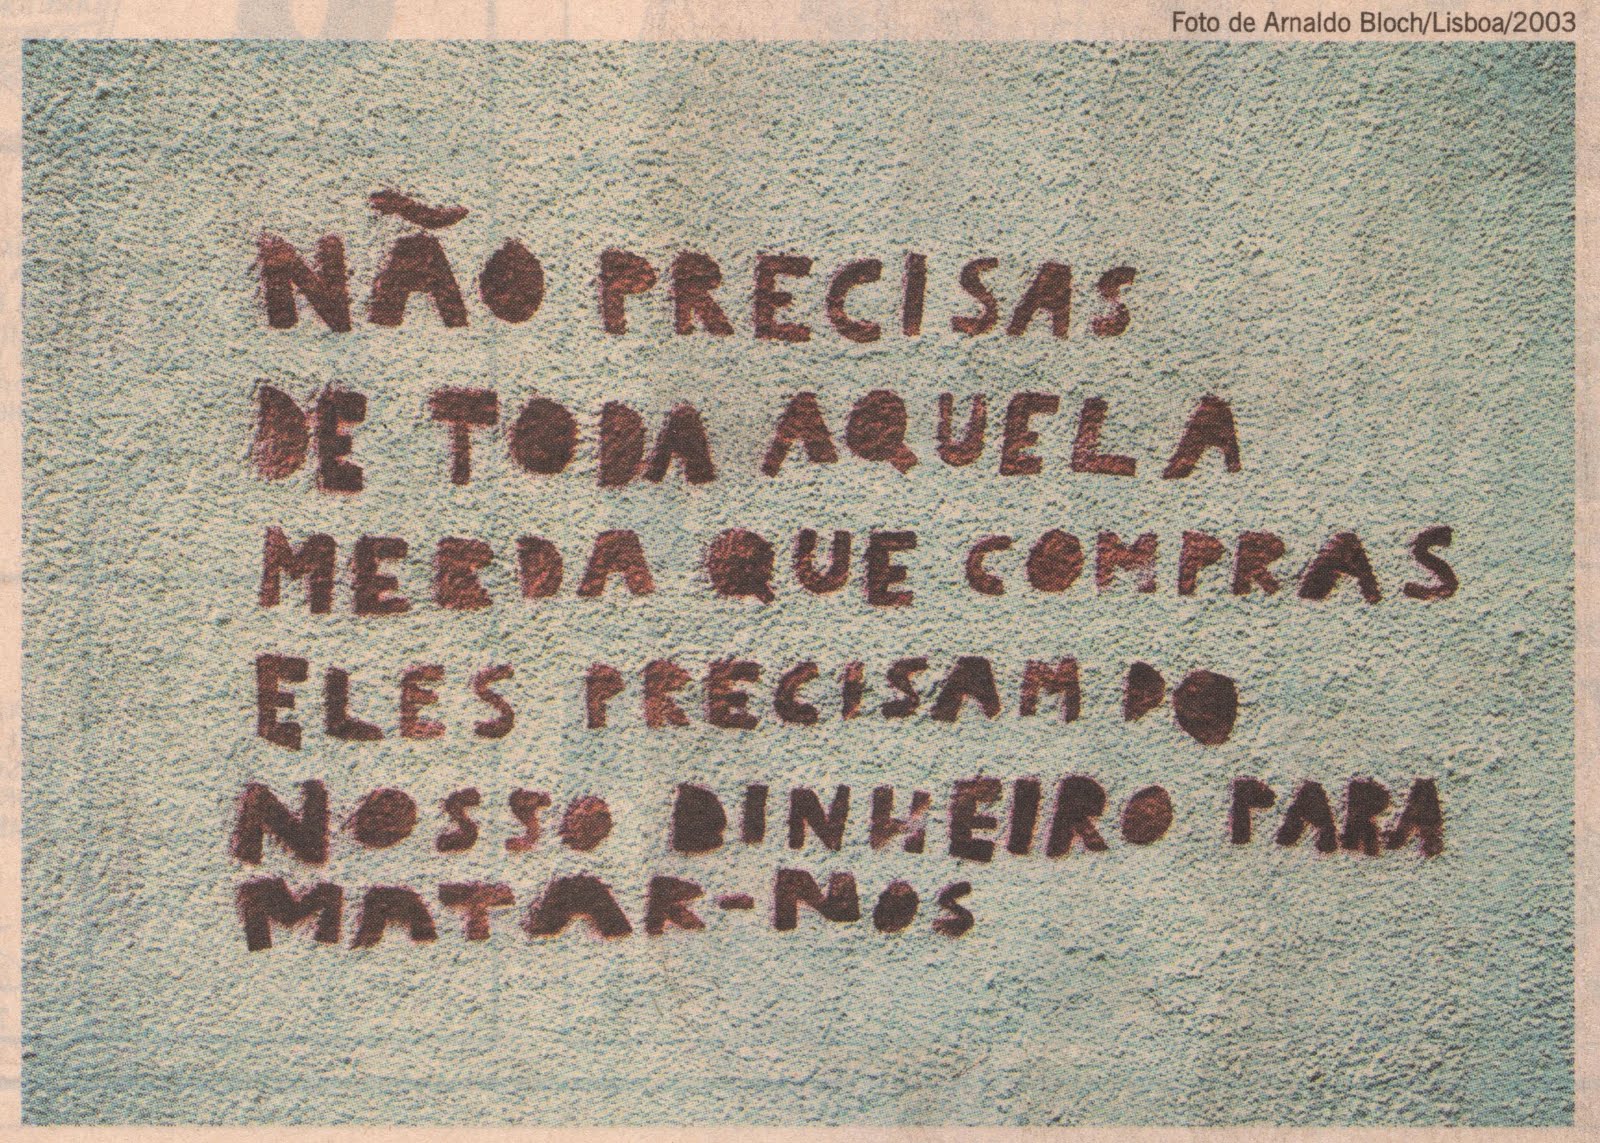 Dizeres fotografados num muro em Lisboa, em 2003